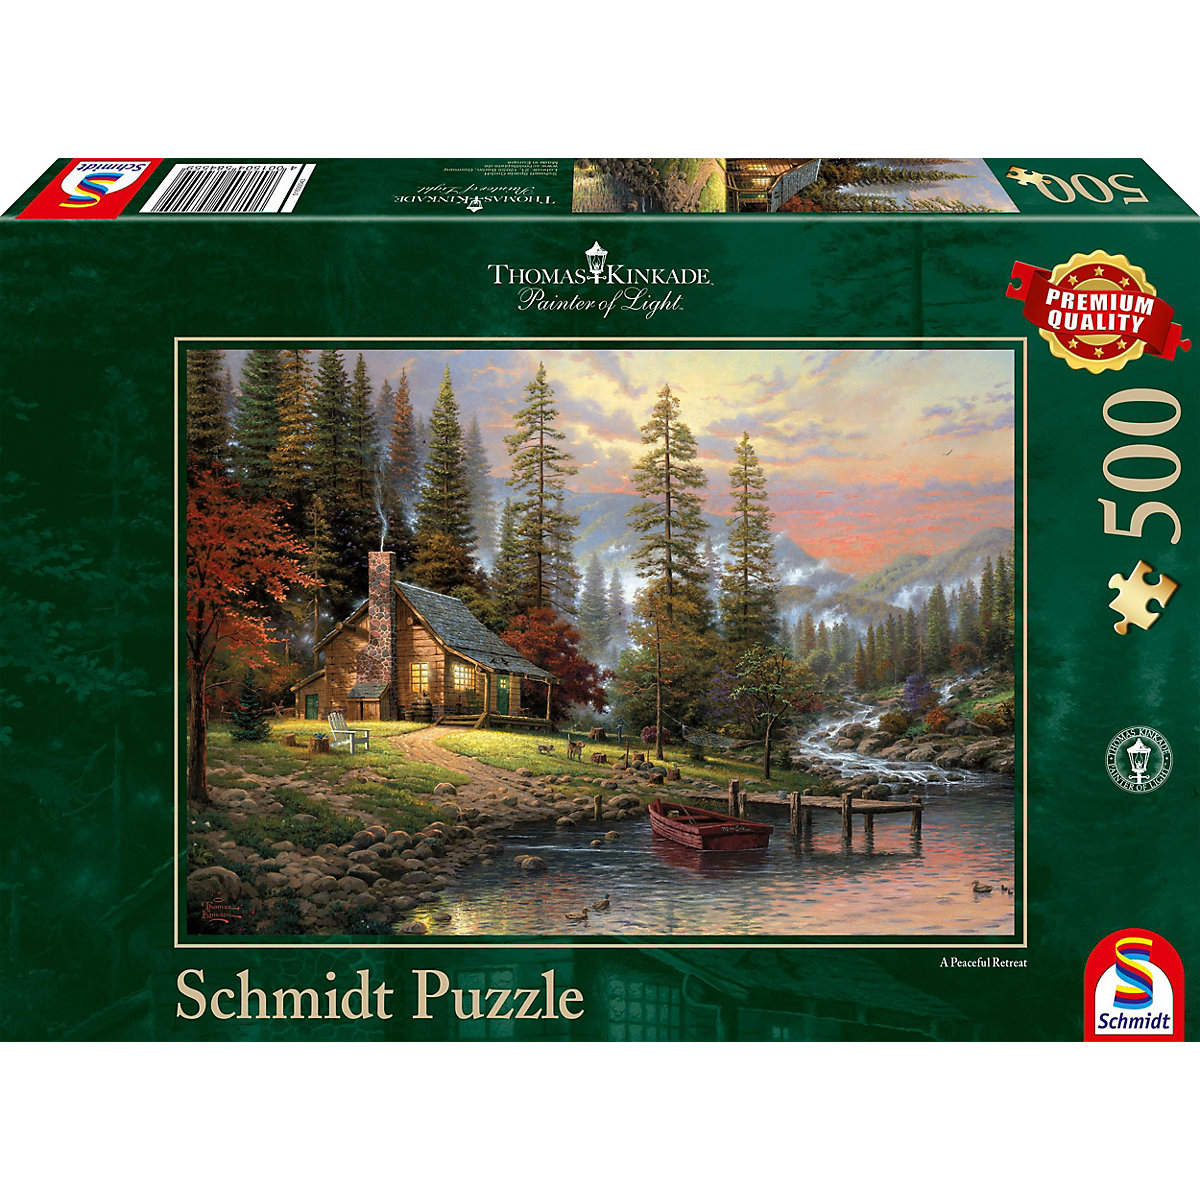 Schmidt Spiele Puzzle 500 Teile Thomas Kinkade Haus in den Bergen GU9477